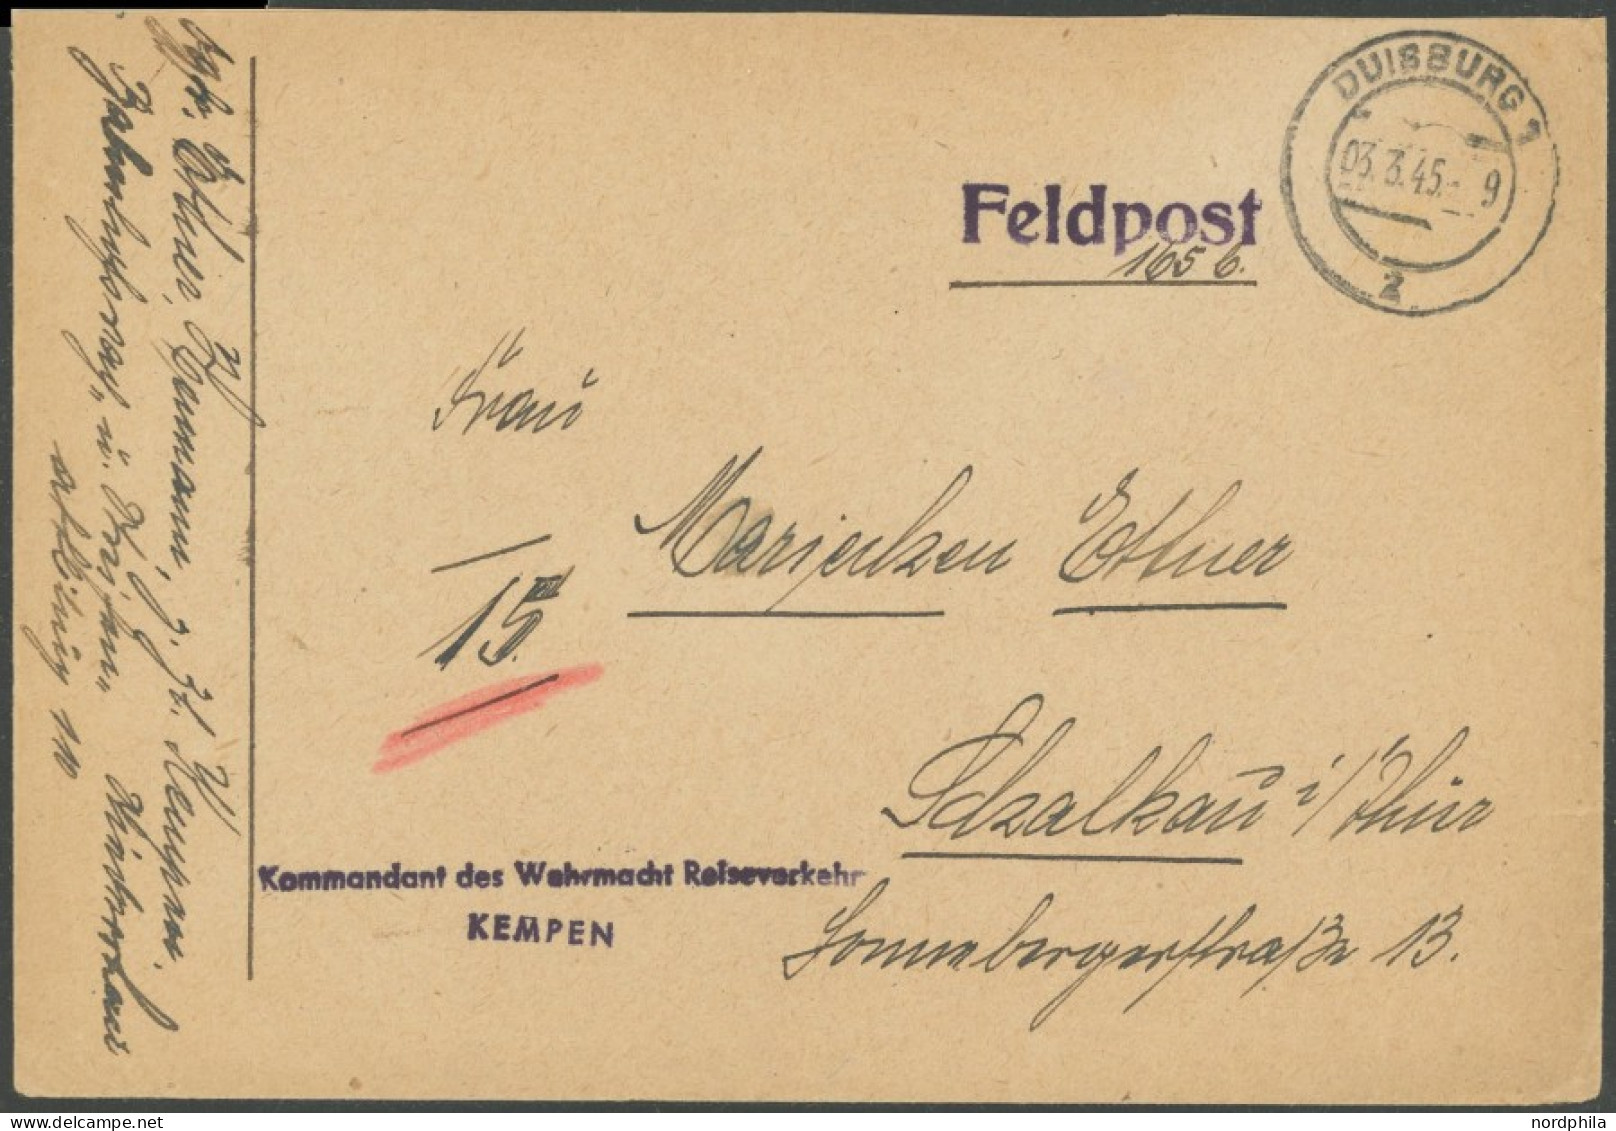 FELDPOST II. WK BELEGE 1945, Feldpostbrief Mit L1 KOMMANDANT DER WEHRMACHT REISEVERKEHR Und KEMPEN, Handschriftlicher Ab - Occupation 1938-45